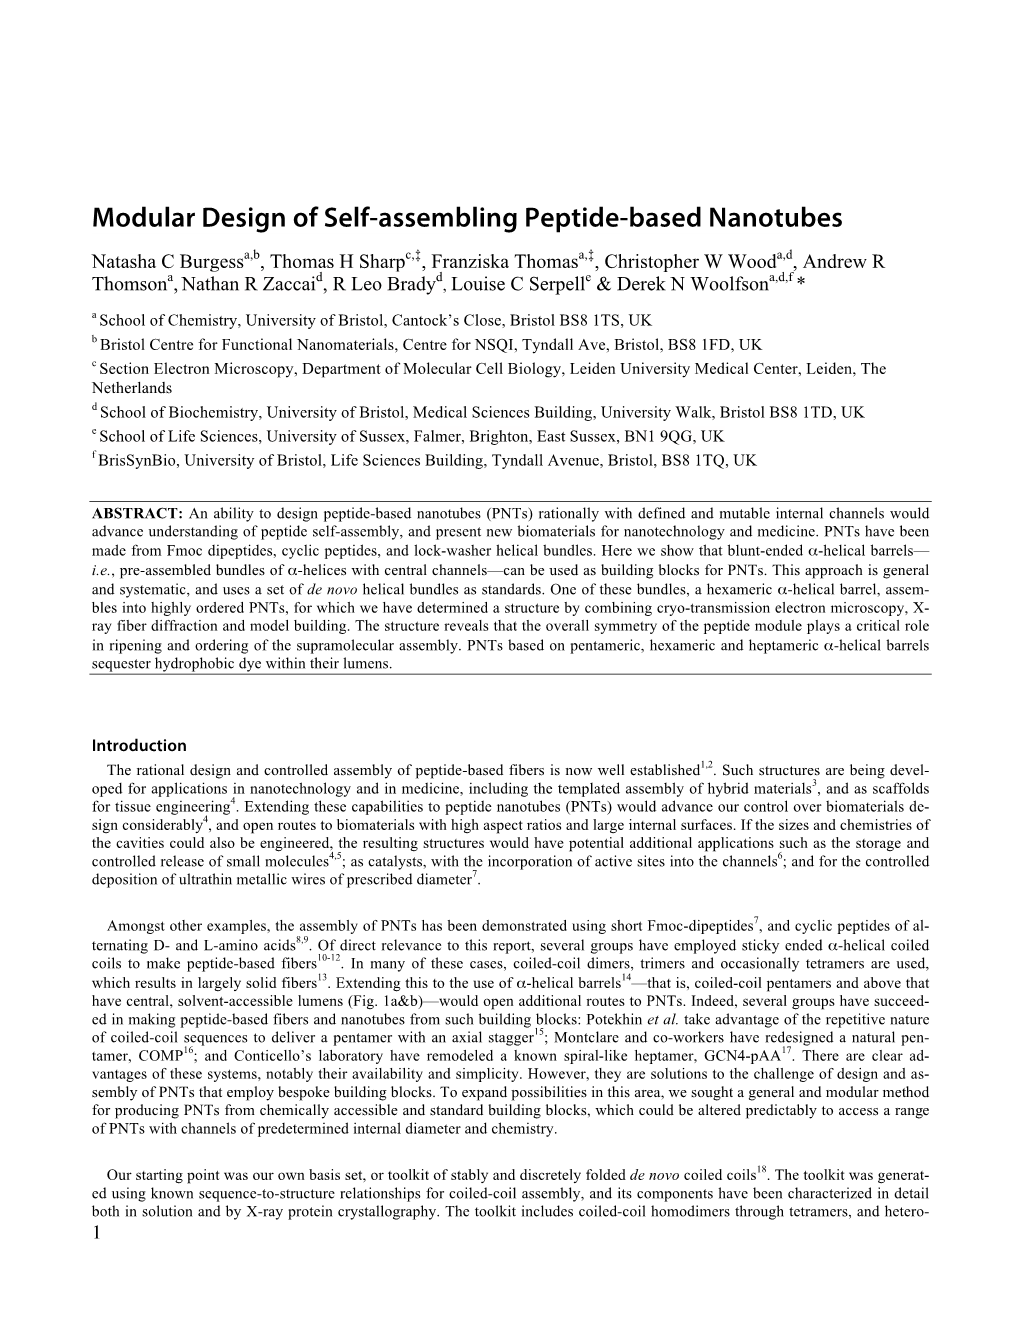 Modular Design of Self-Assembling Peptide-Based Nanotubes